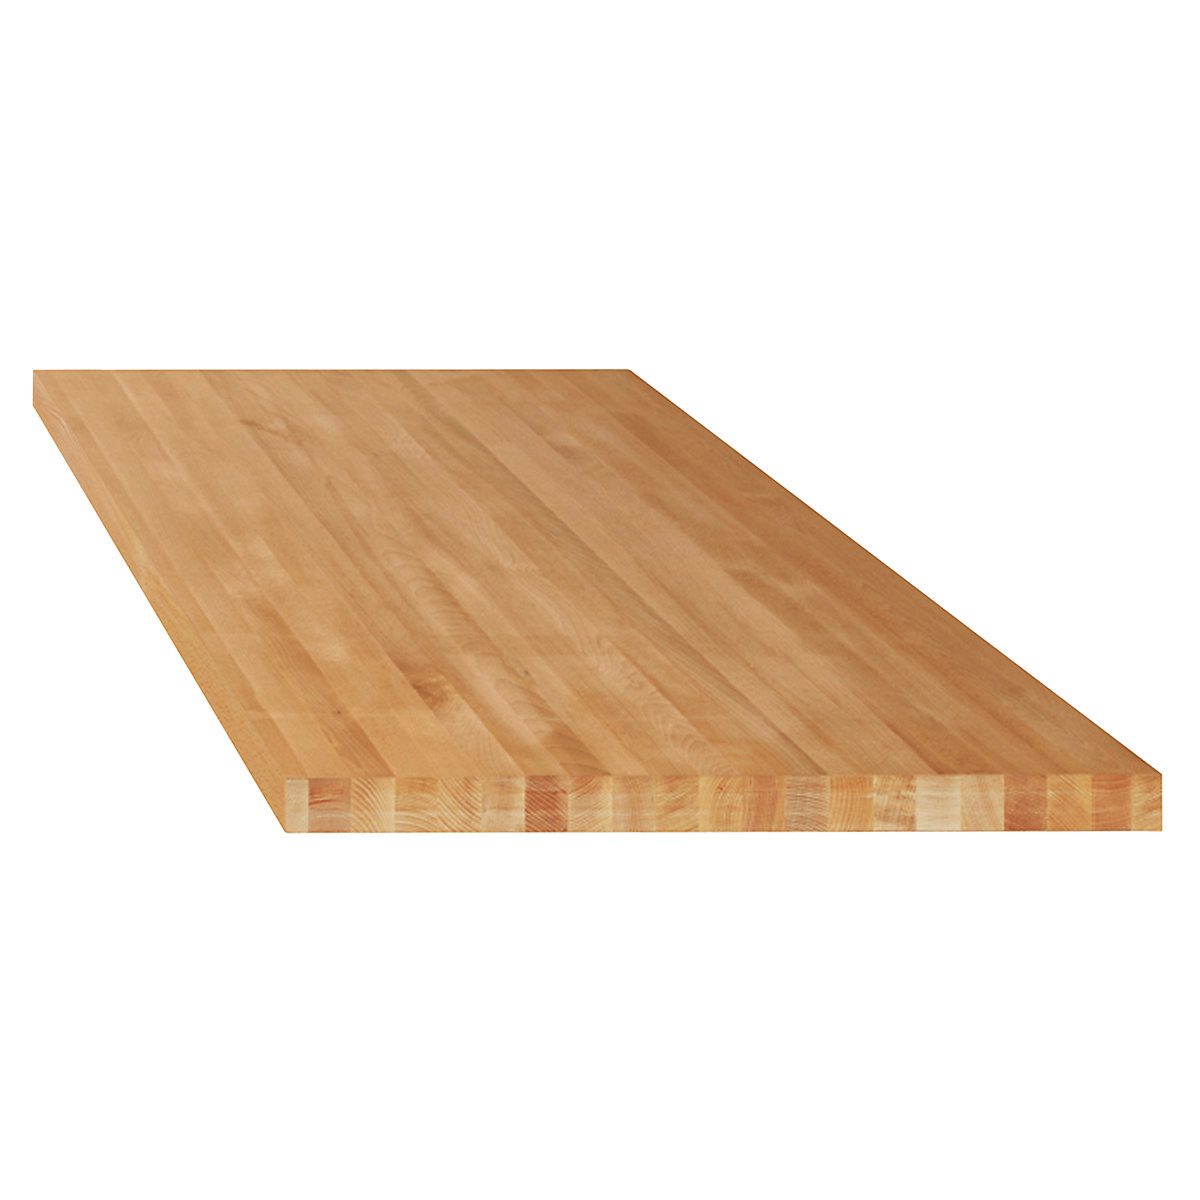 Delovna plošča za modulne delovne mize – LISTA, masivni bukov les, ŠxG 2000 x 750 mm, debelina 40 mm-9